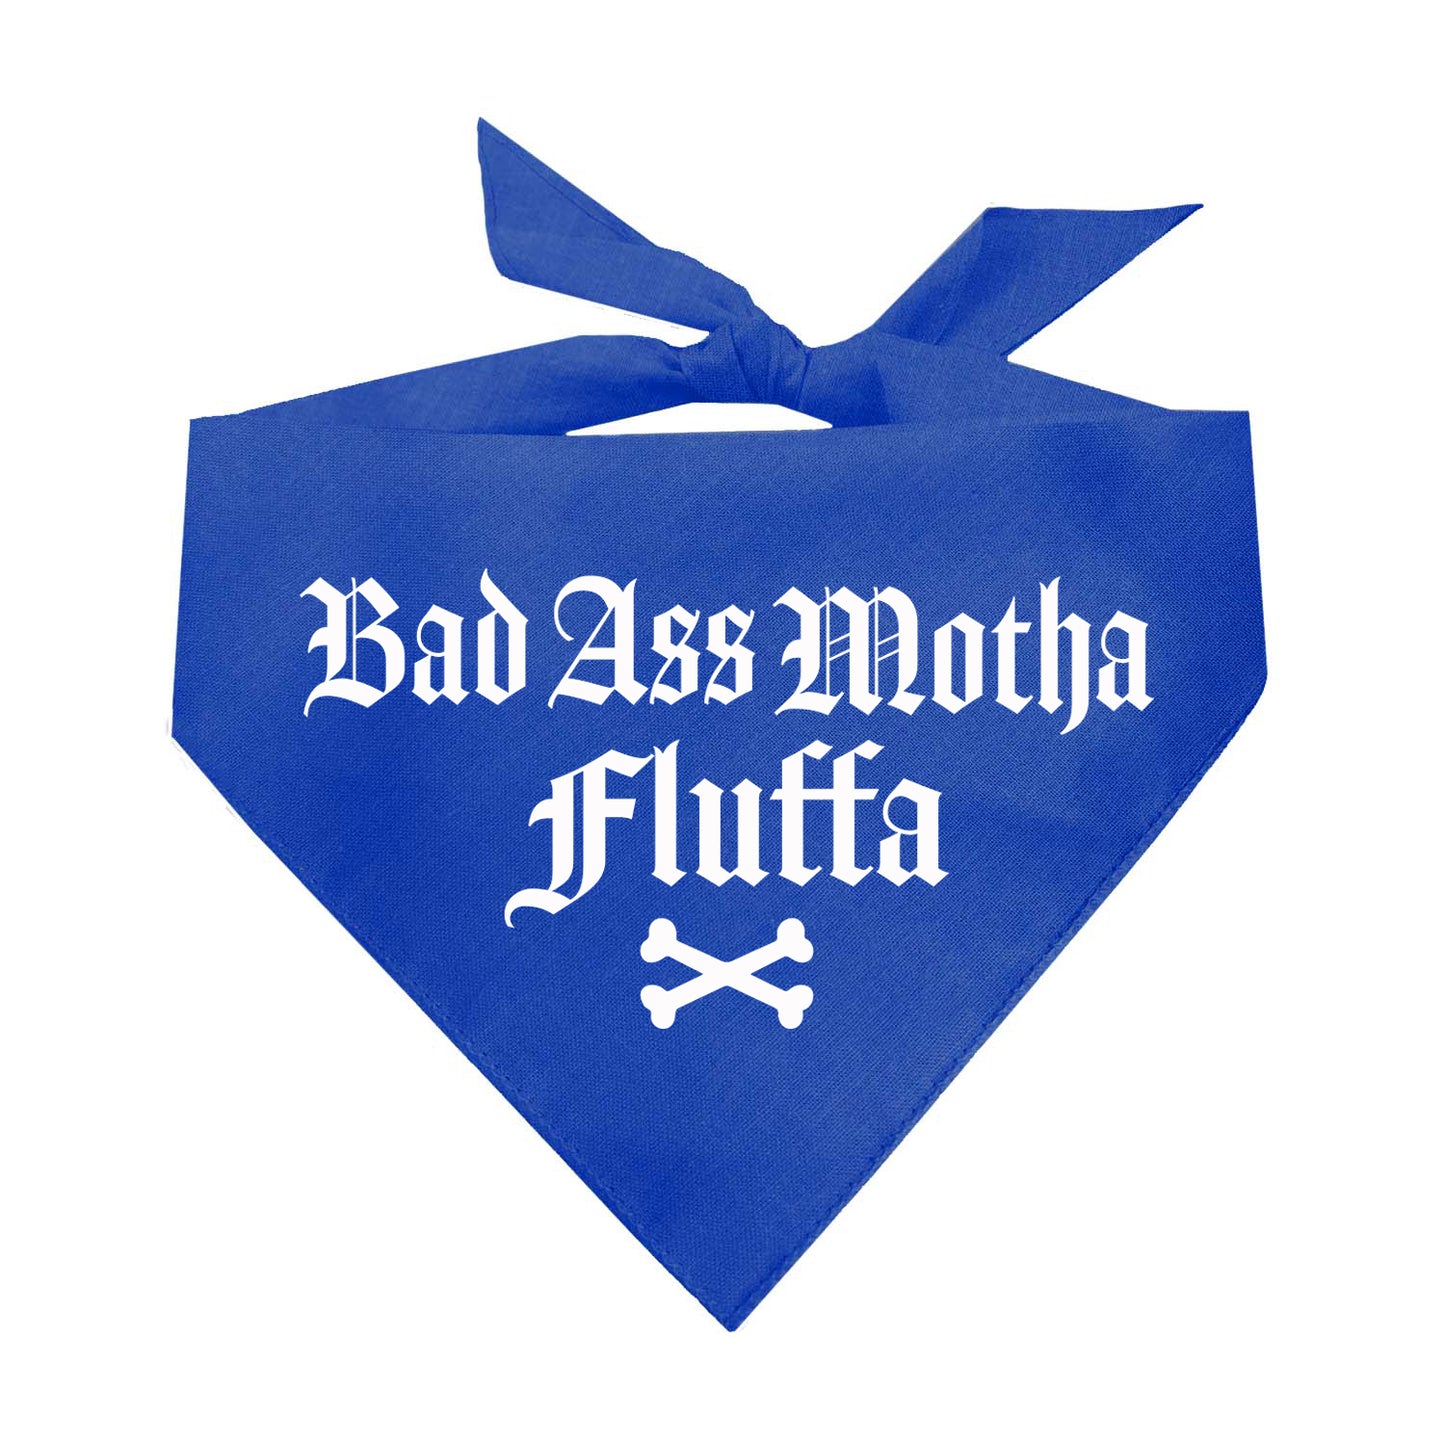 Badass Motha Fluffa Triangle Dog Bandana